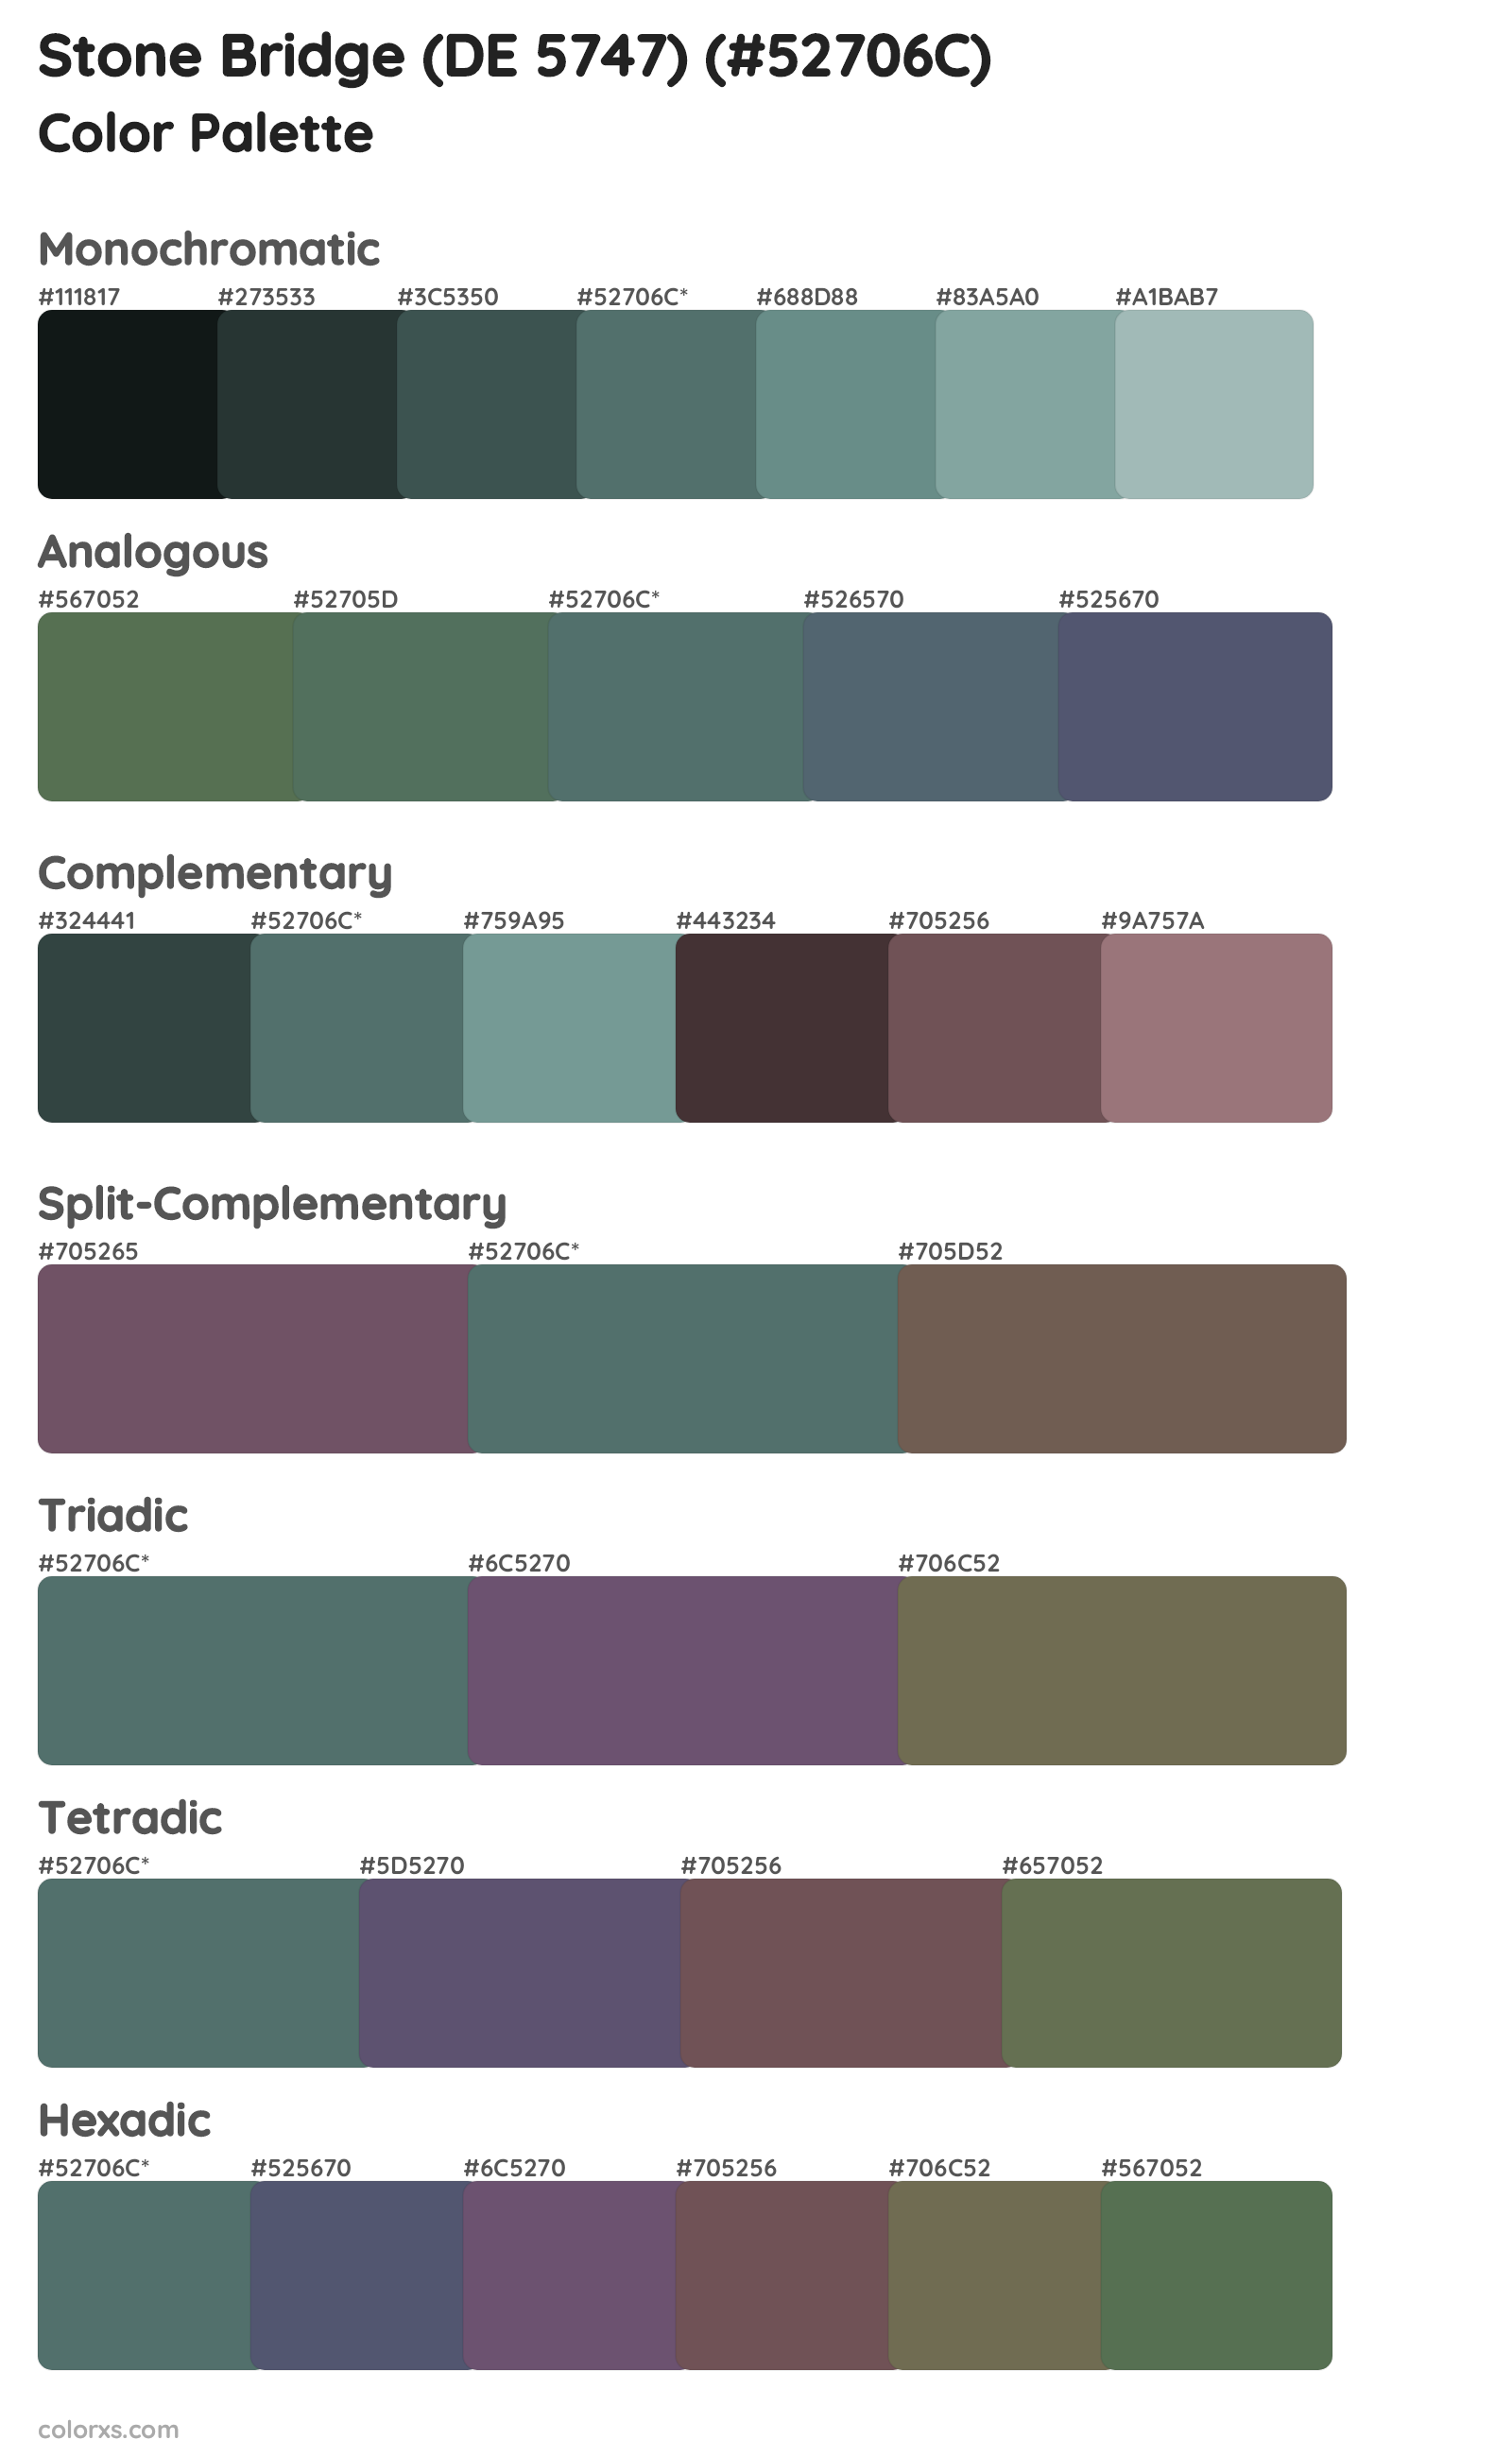 Stone Bridge (DE 5747) Color Scheme Palettes